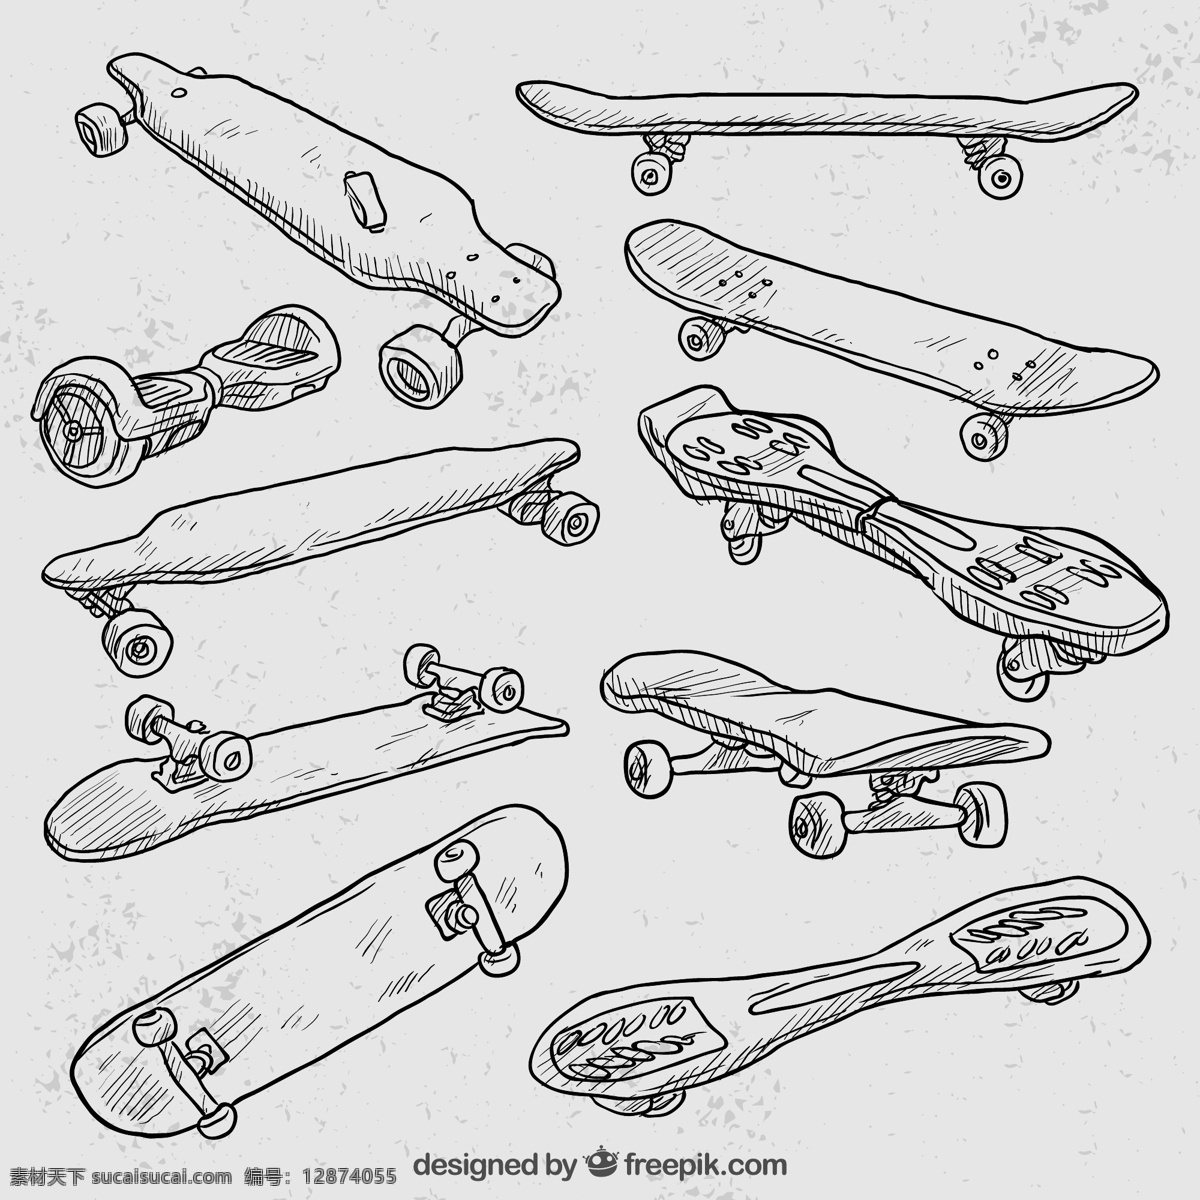 手绘 滑板 矢量 运动物品 滑板矢量图 滑板手绘图 滑板车手绘 高清图片